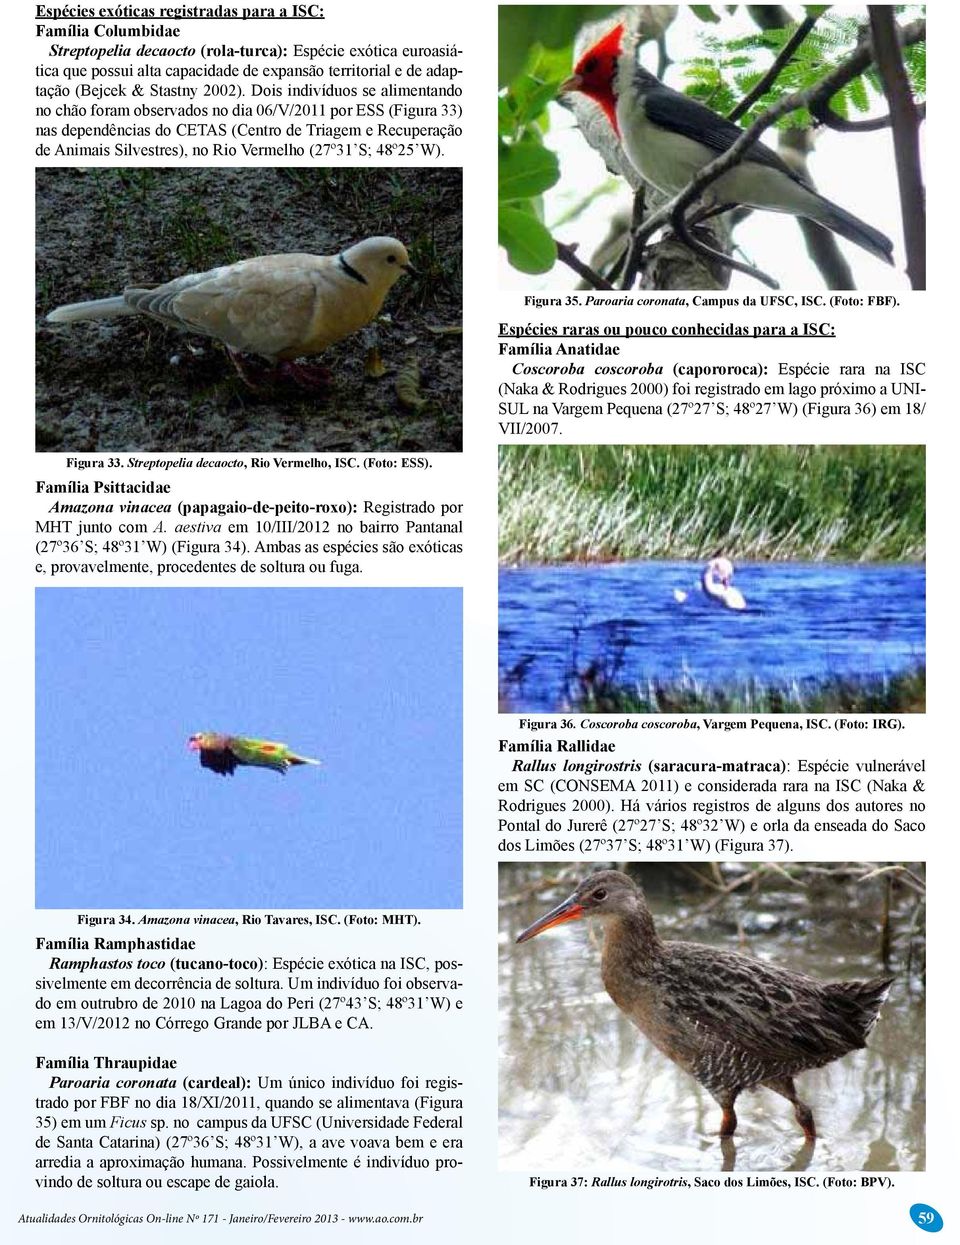 Dois indivíduos se alimentando no chão foram observados no dia 06/V/2011 por ESS (Figura 33) nas dependências do CETAS (Centro de Triagem e Recuperação de Animais Silvestres), no Rio Vermelho (27º31